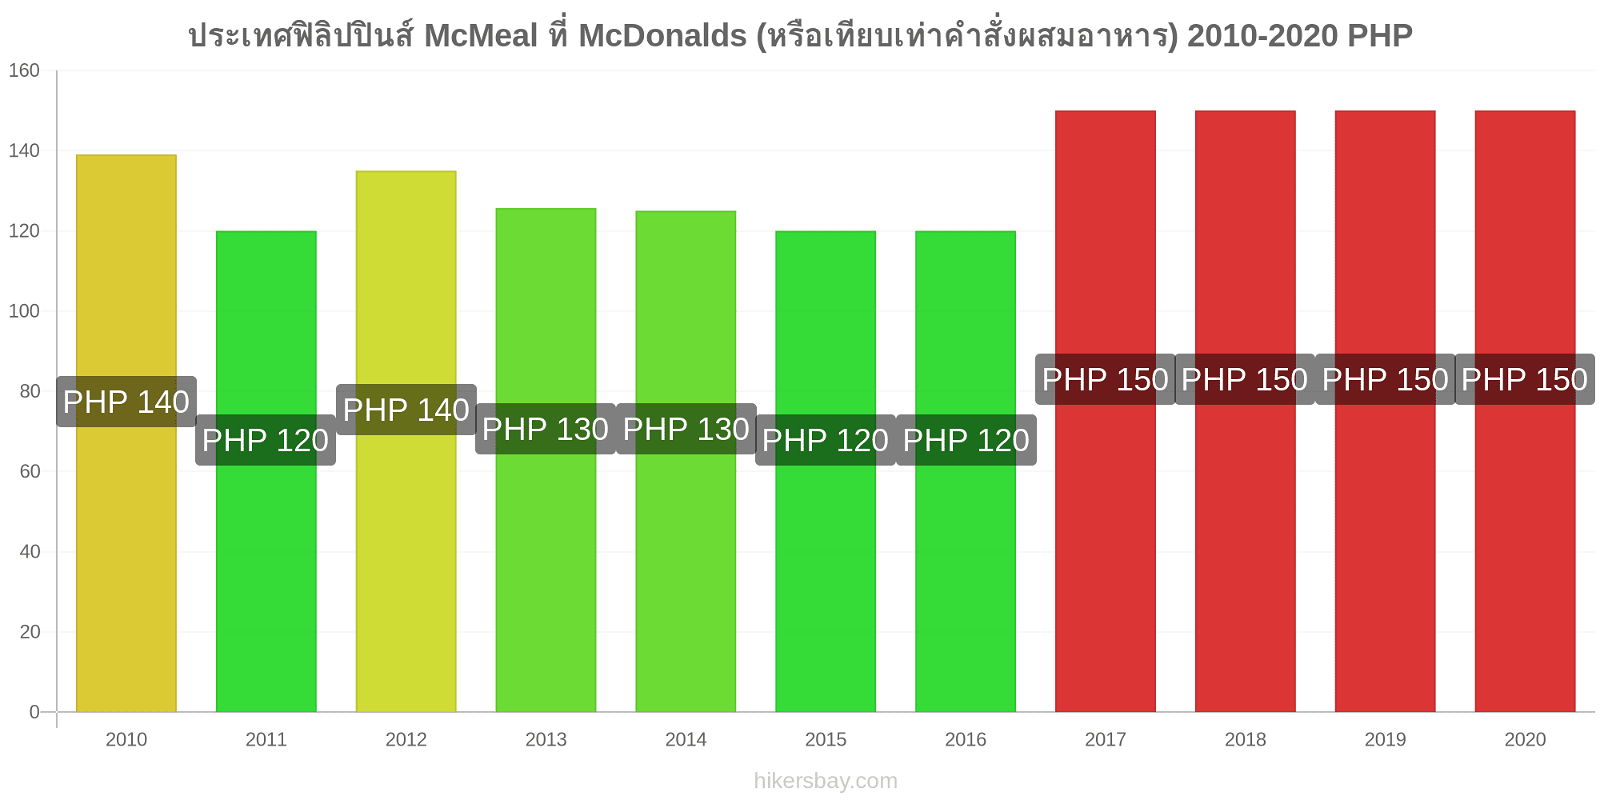 ประเทศฟิลิปปินส์ การเปลี่ยนแปลงราคา McMeal ที่ McDonalds (หรือเทียบเท่าคำสั่งผสมอาหาร) hikersbay.com